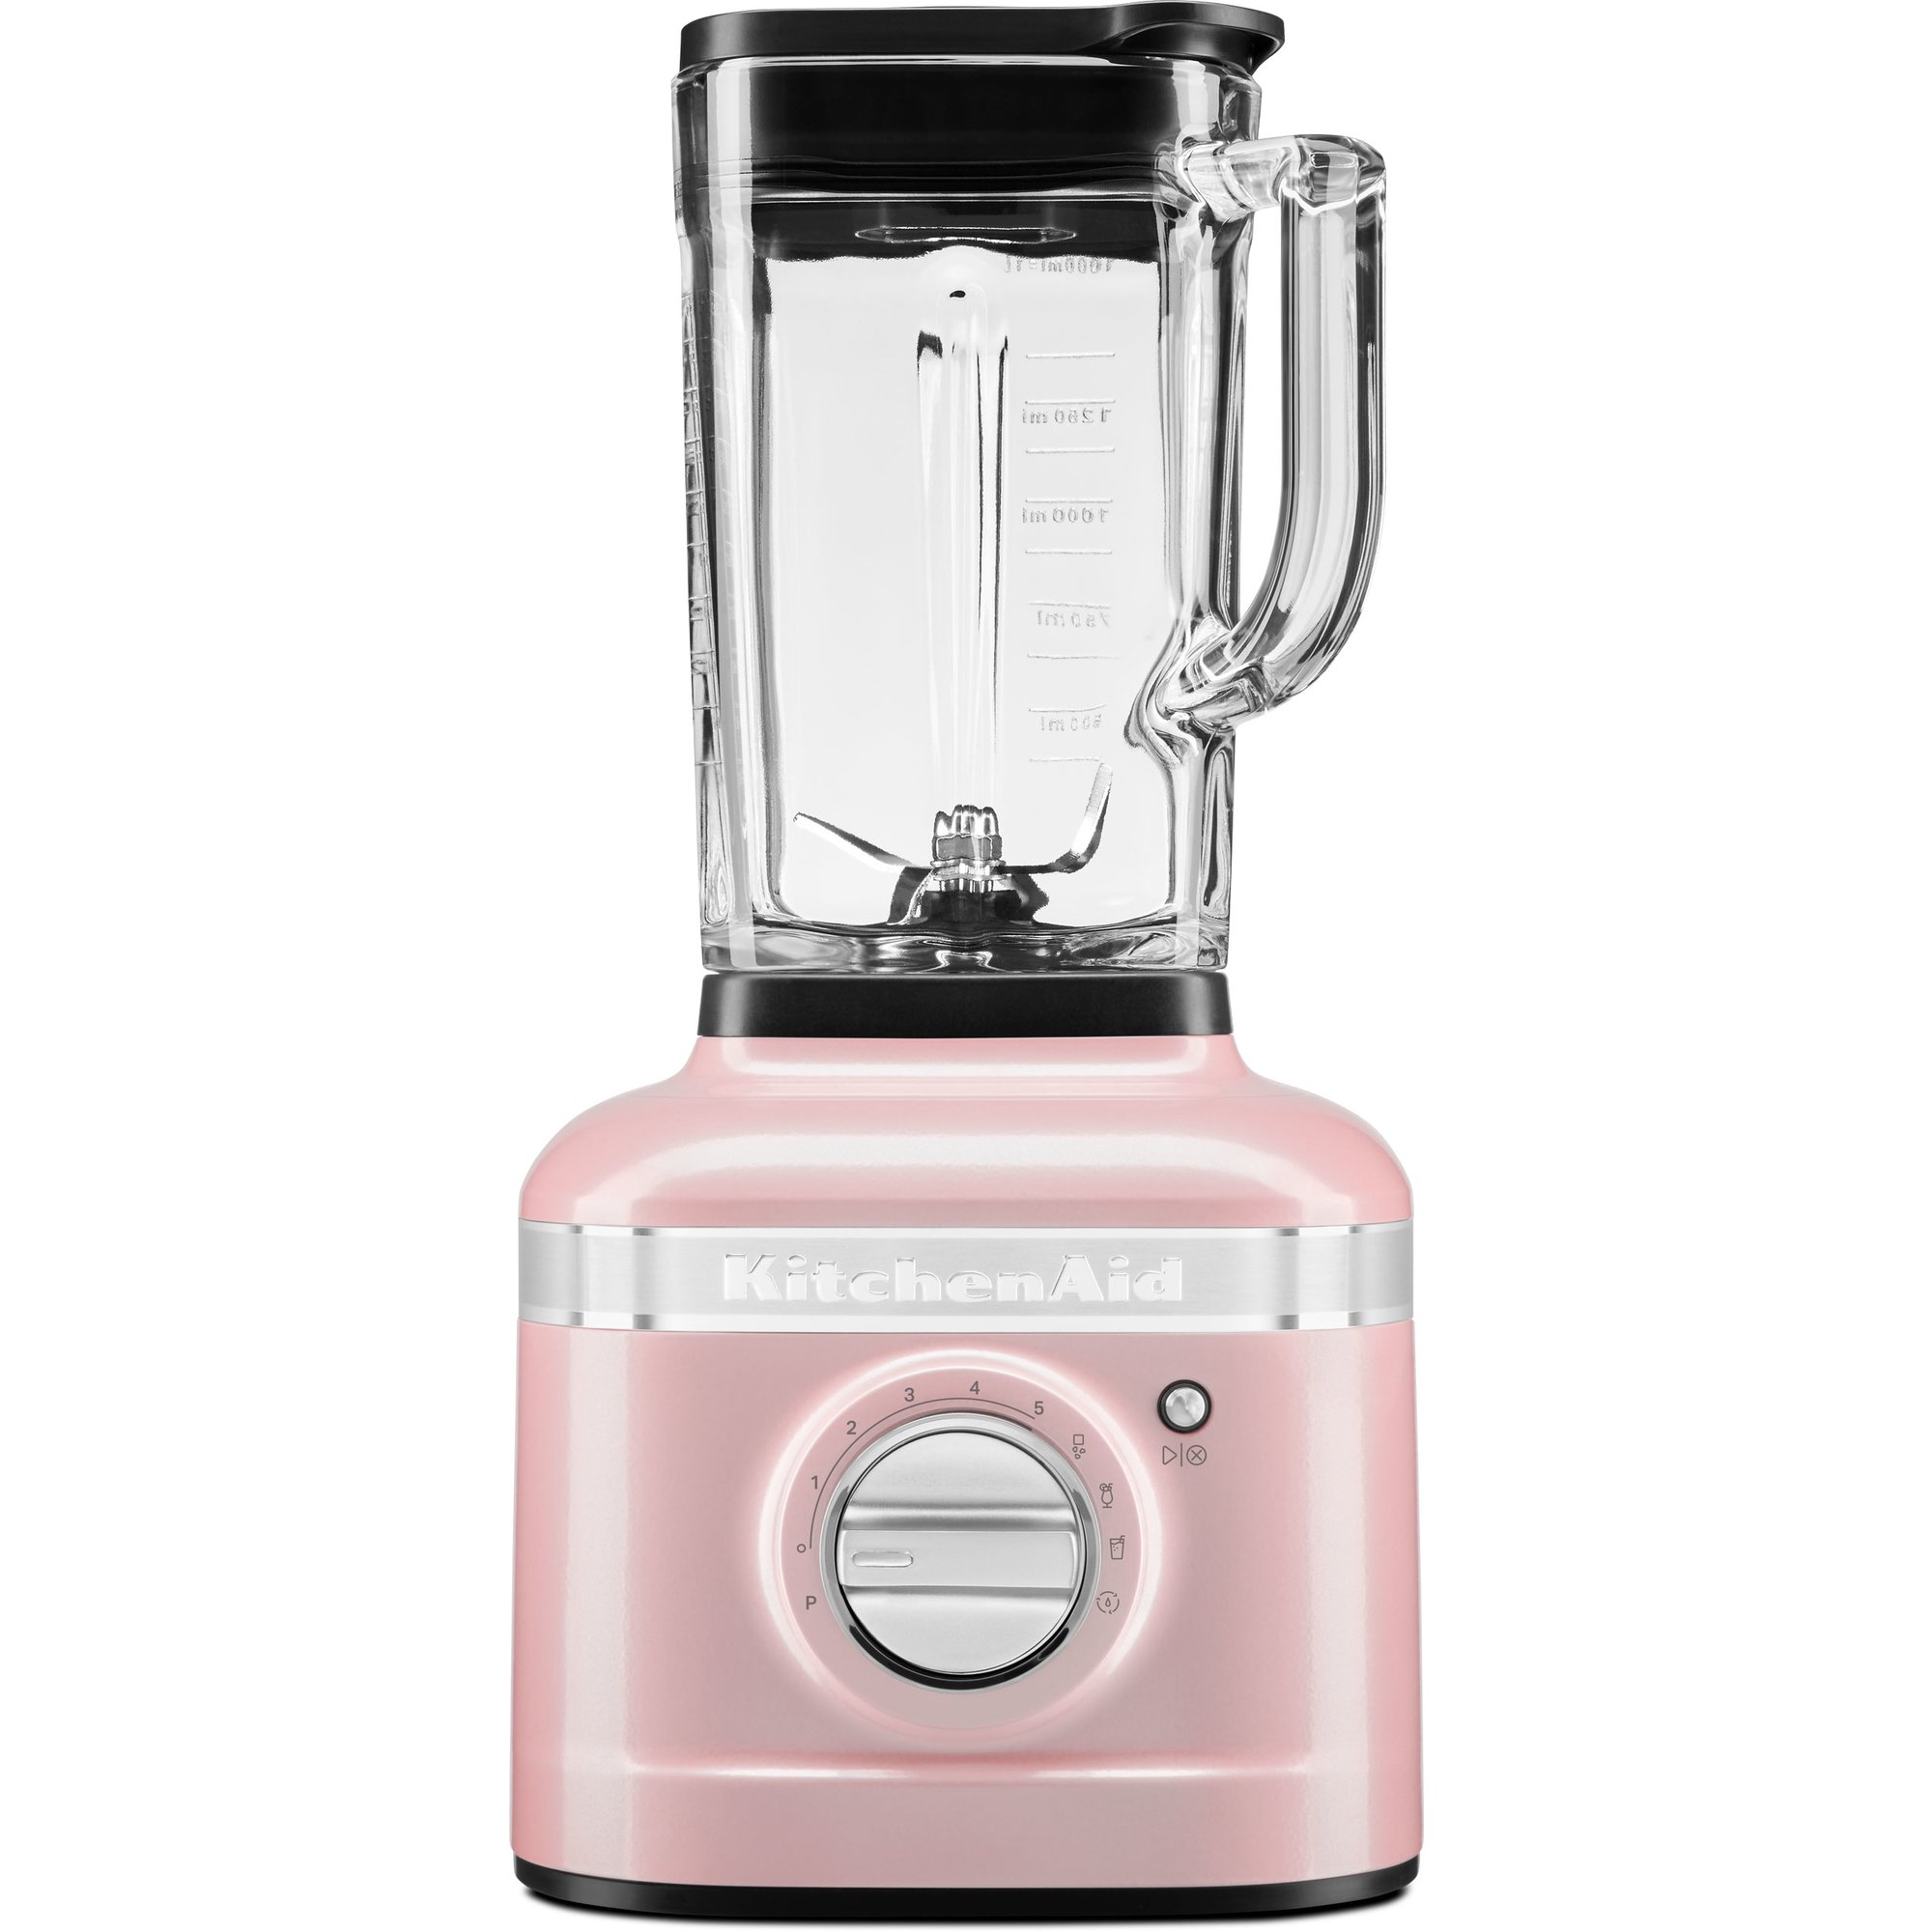 KitchenAid Artisan K400 Blender, silky pink